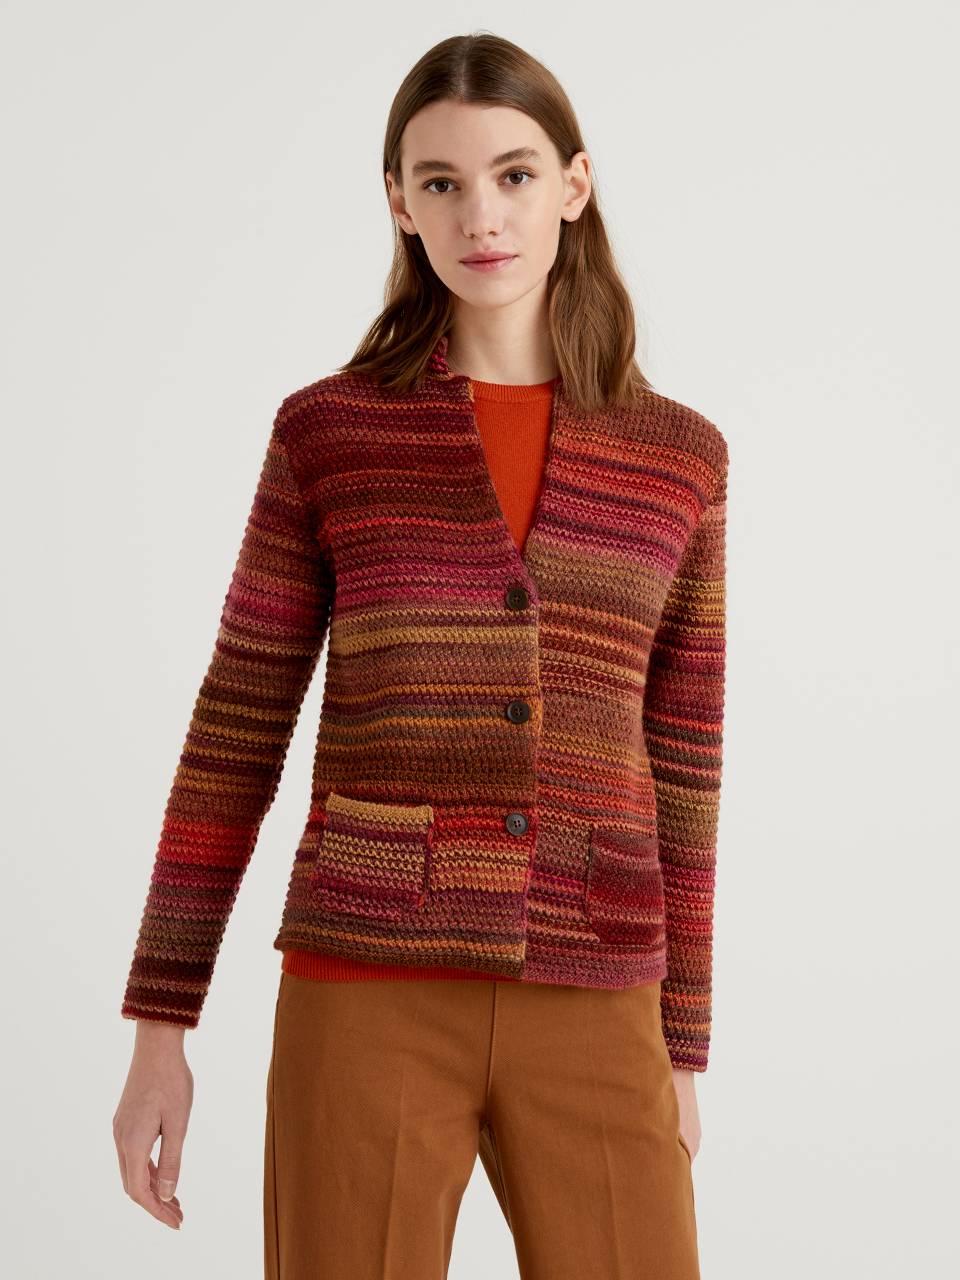 Benetton Knit jacket in multicolor wool blend. 1